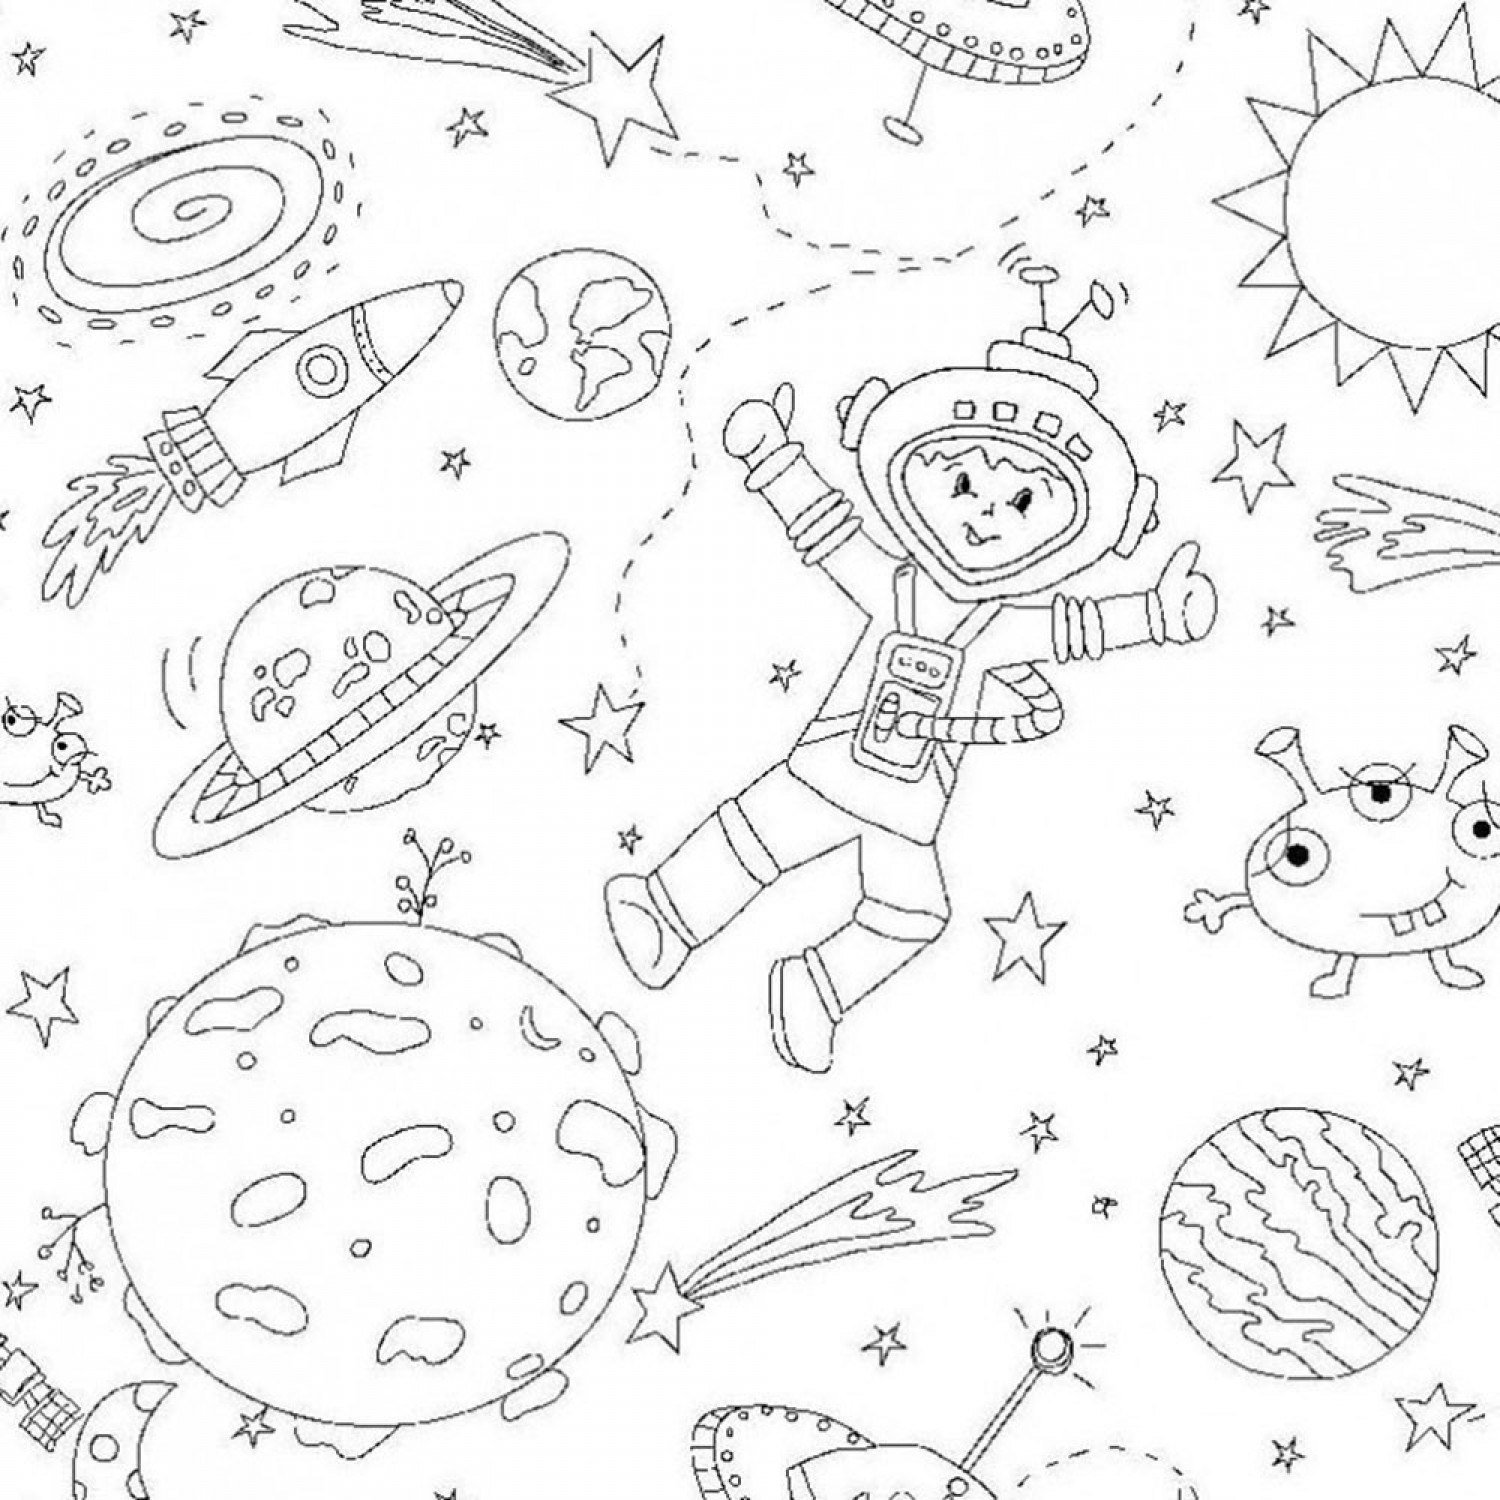 Тема космос для детей 7 лет. Раскраска. В космосе. Космос раскраска для детей. Космонавтика раскраски для детей. Раскраски для детей 7 лет космос.